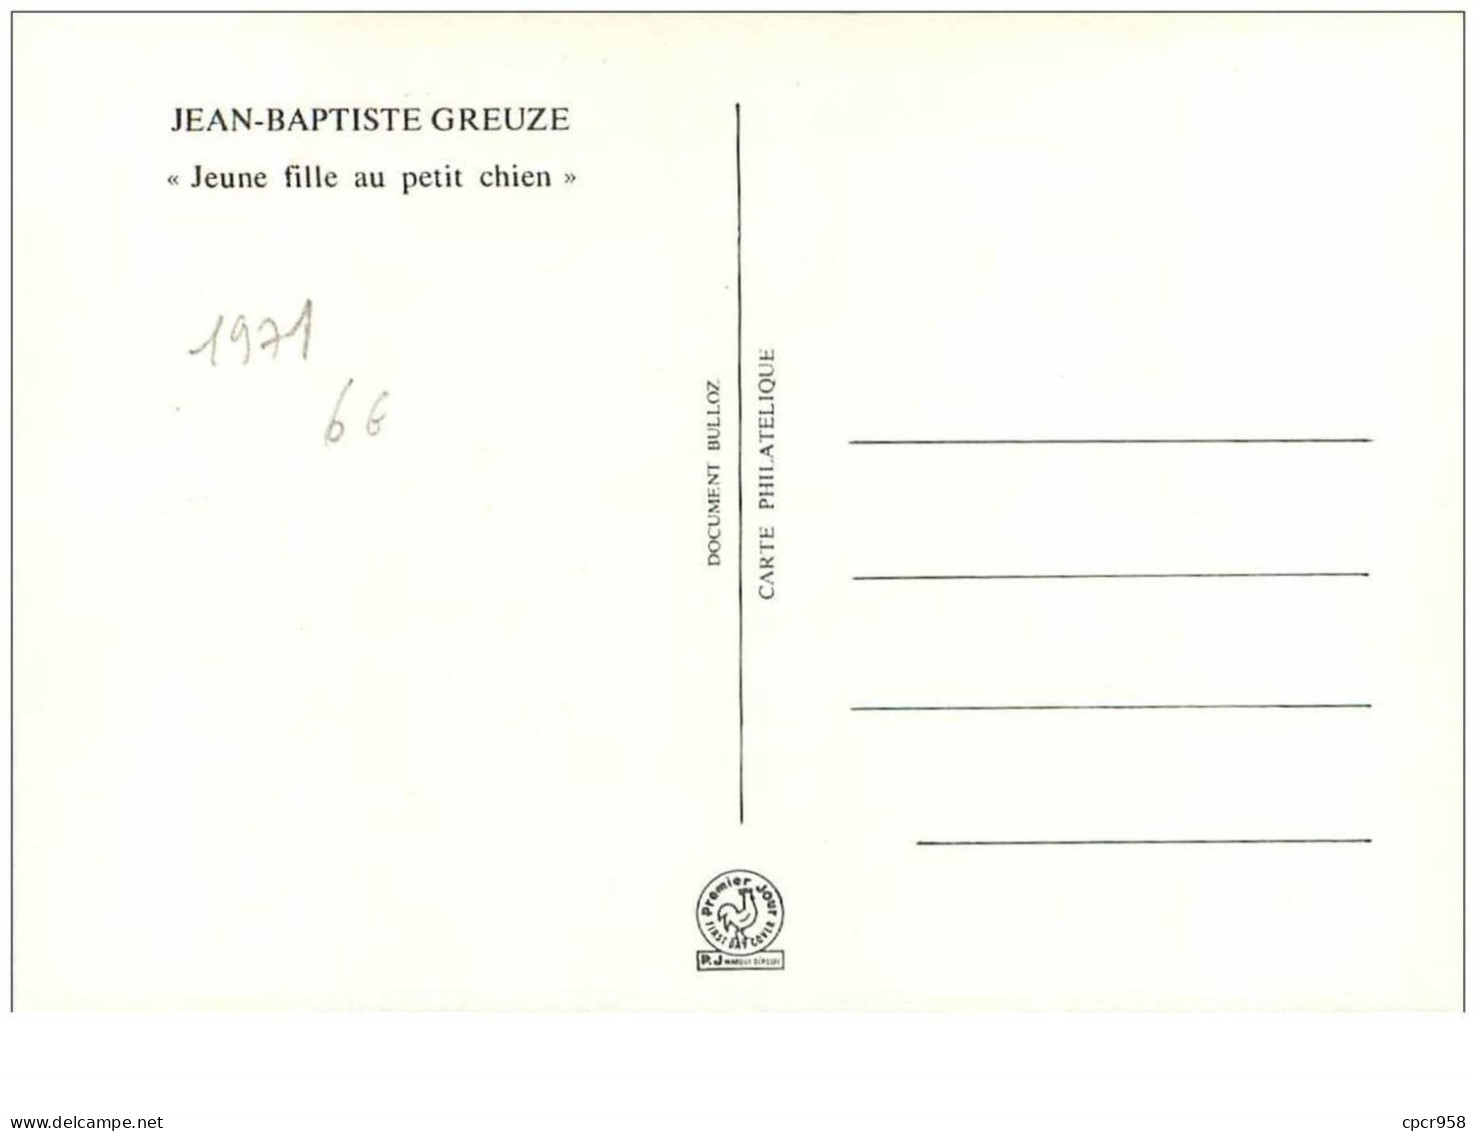 CROIX-ROUGE.n°28543.JEAN BAPTISTE GREUZE."JEUNE FILLE AU PETIT CHIEN".1971.CARTE MAXIMUM. - Croix-Rouge